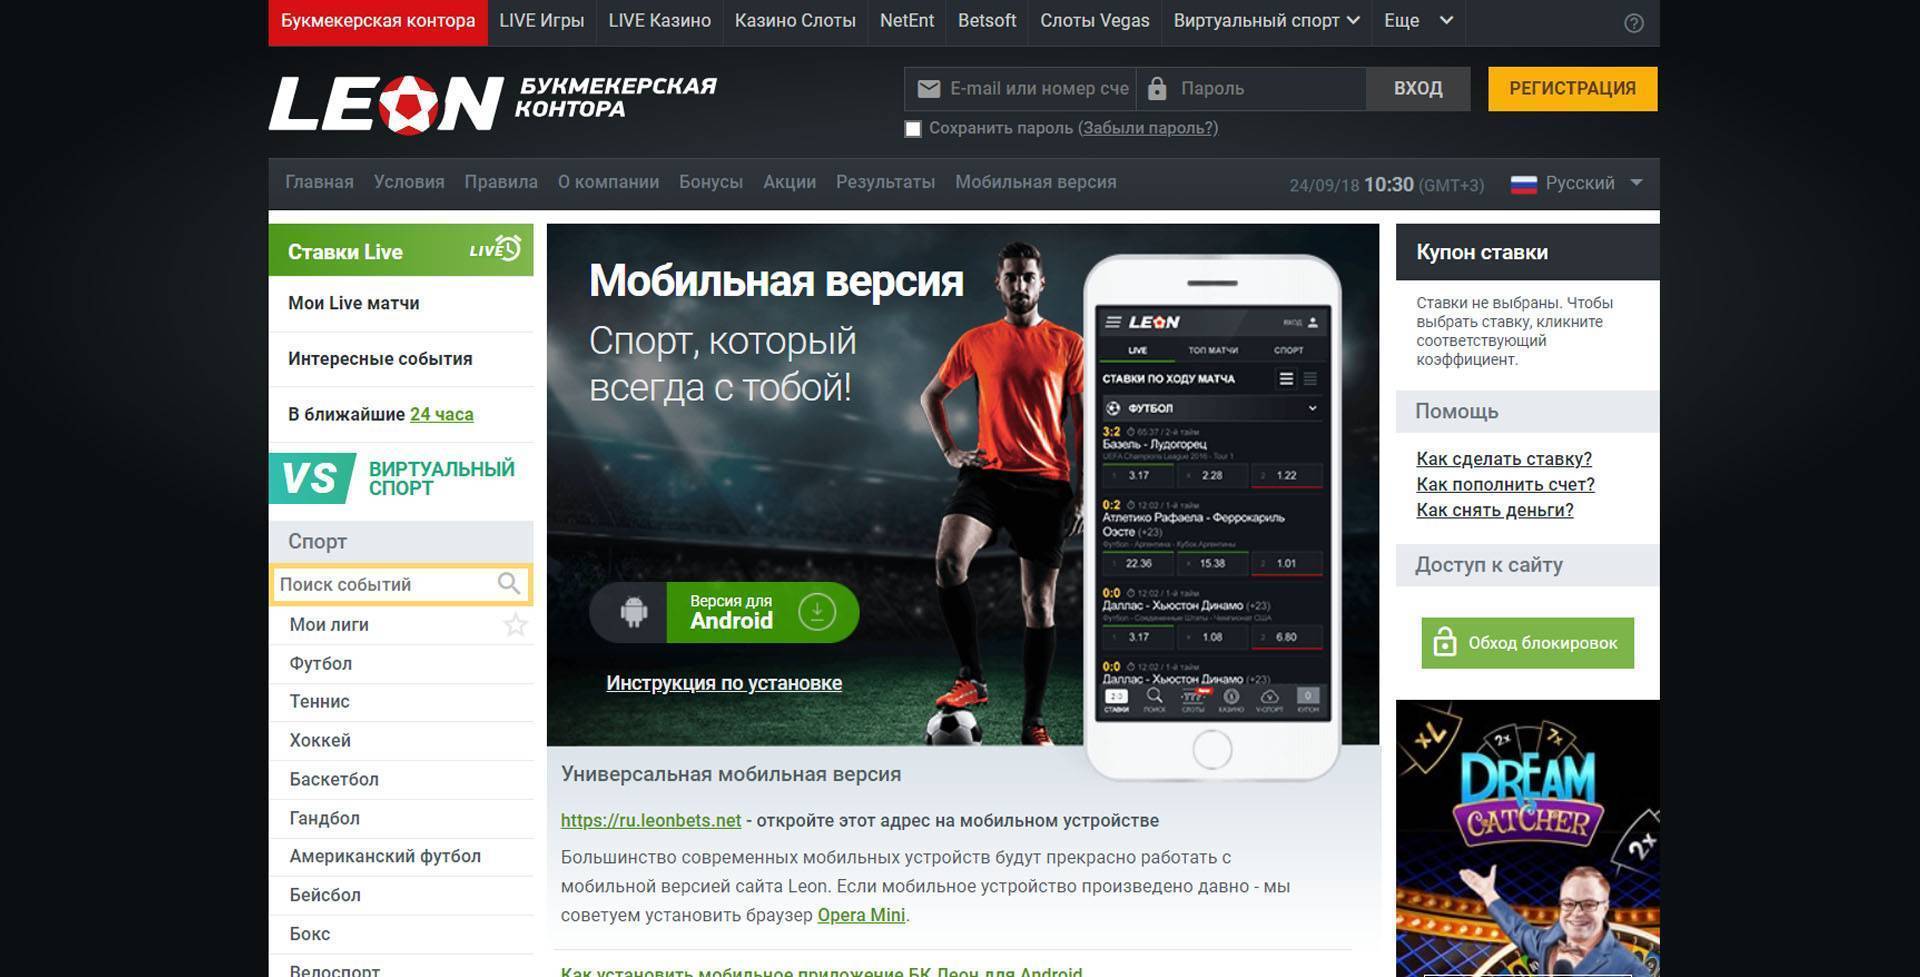 Онлайн ставки на спорт через телефон в букмекерских конторах в рублях — лучшие приложения бк